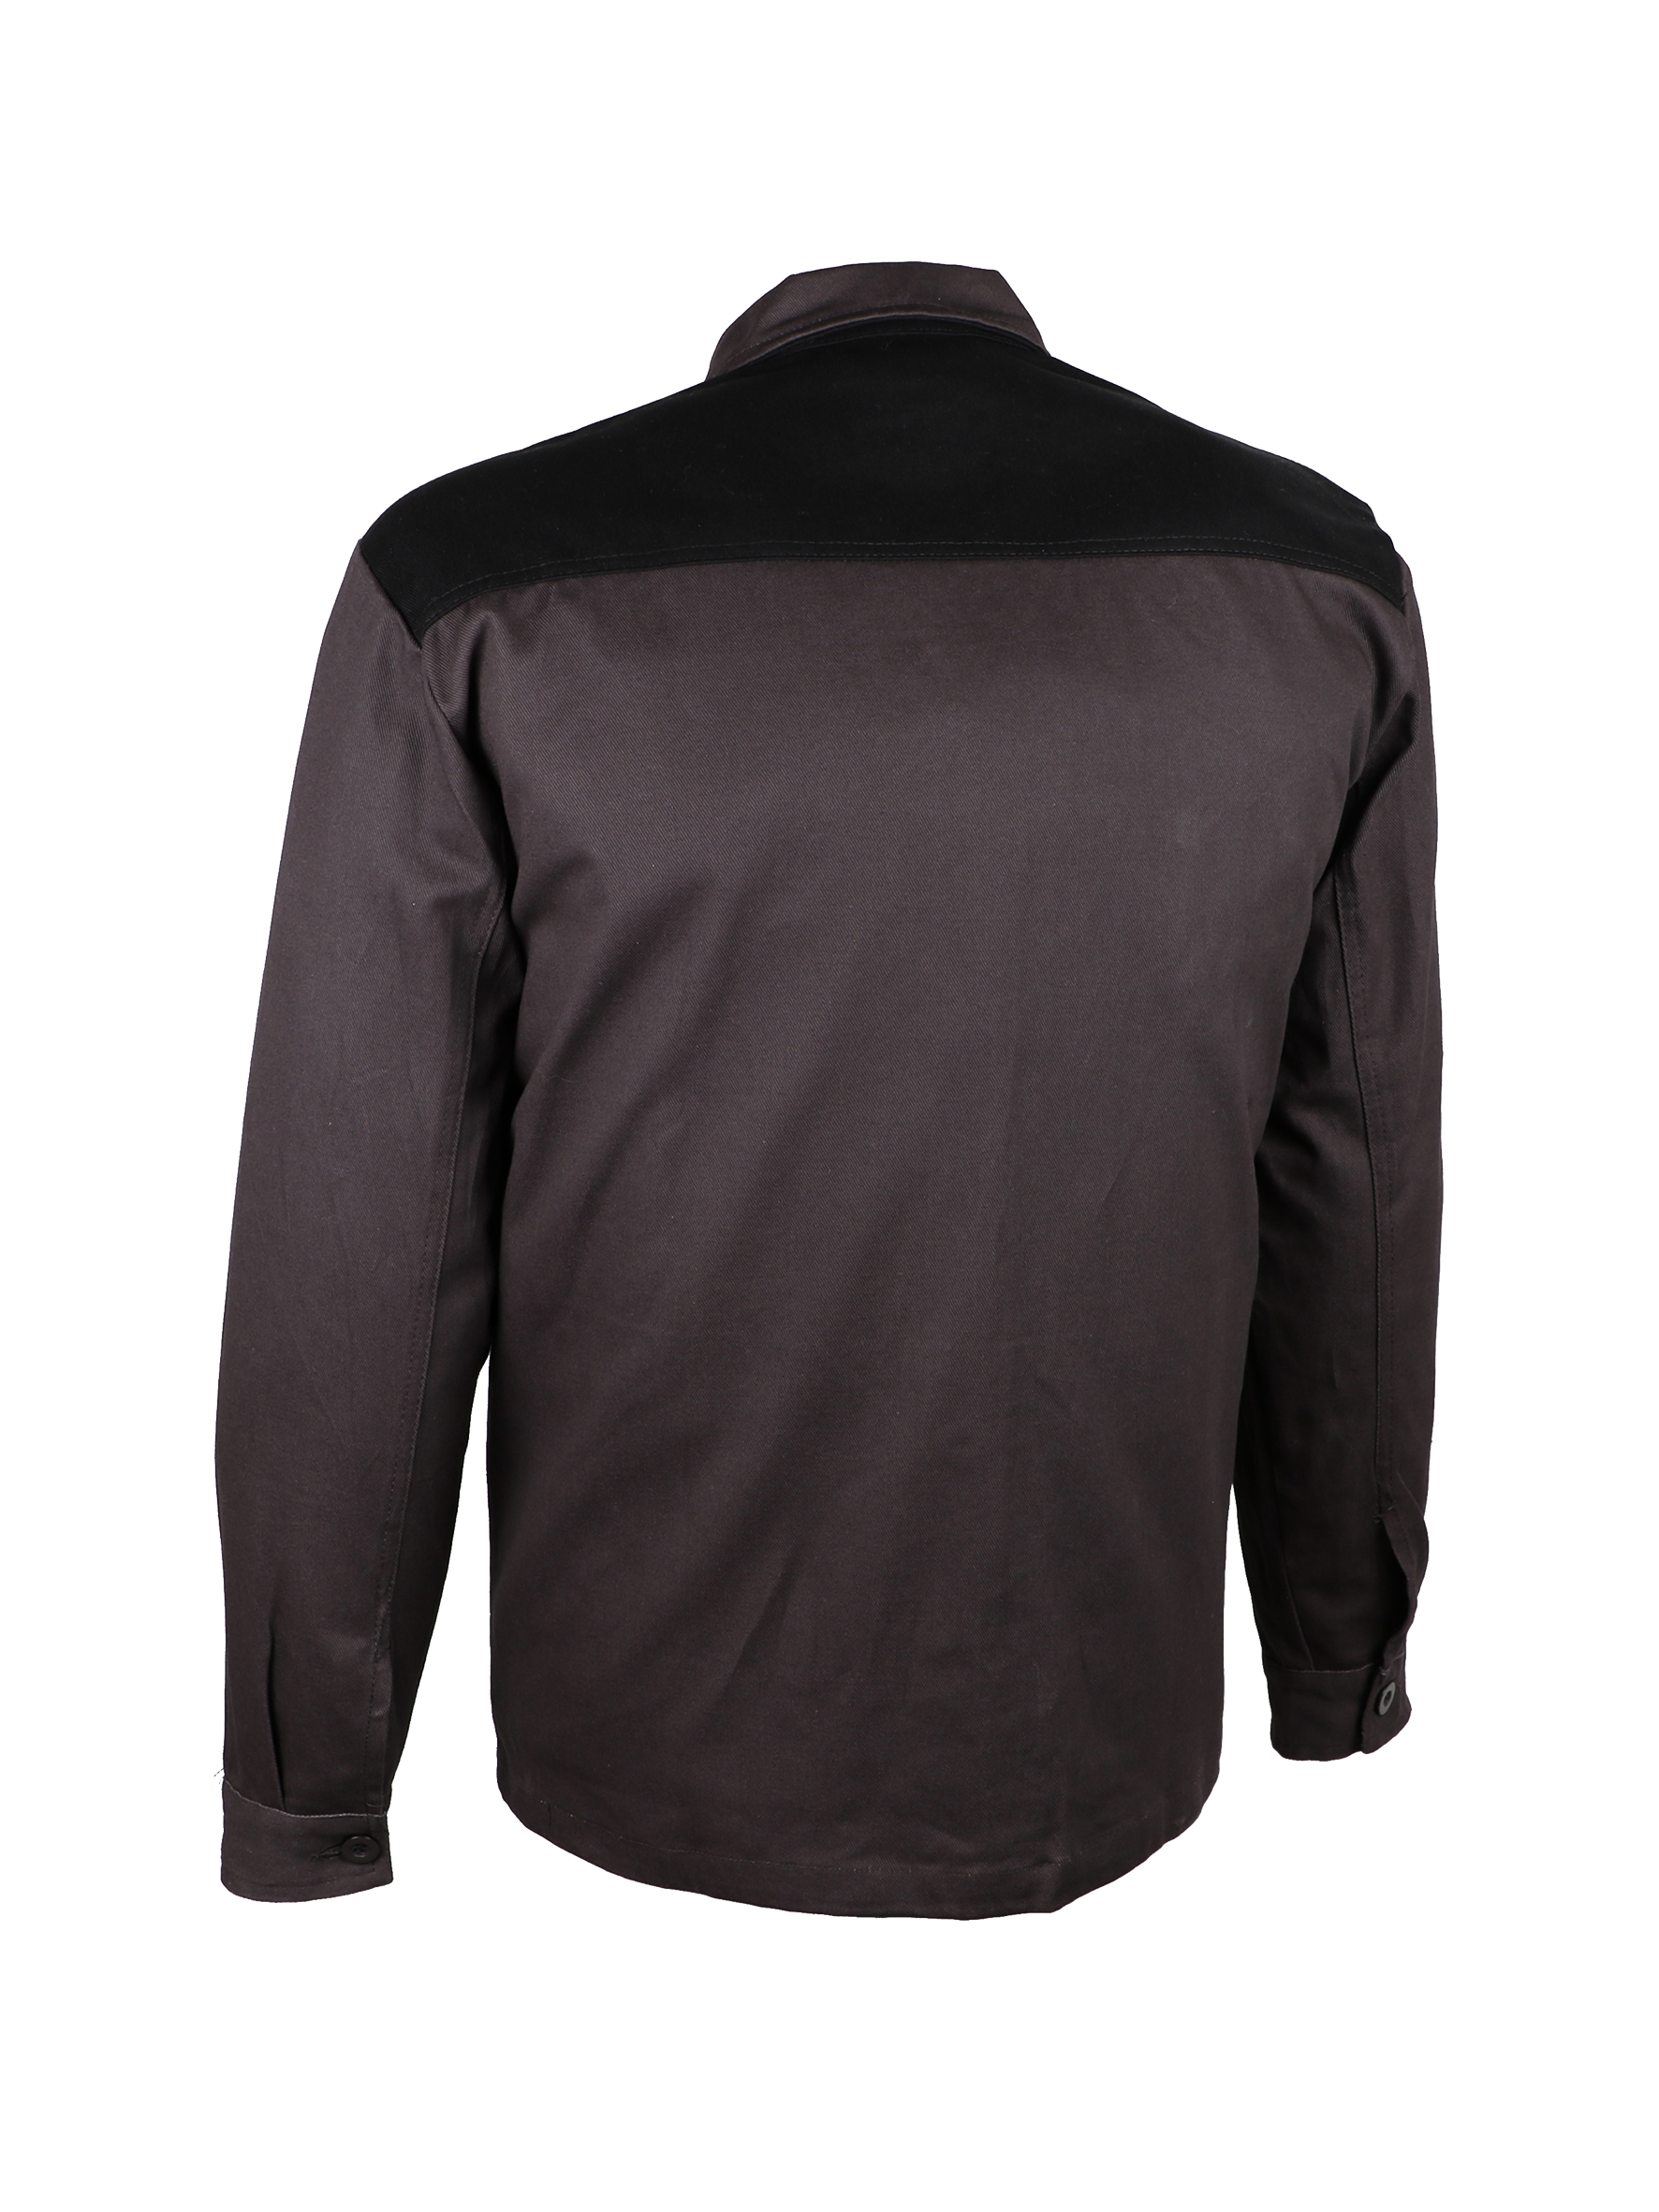 Item Work jacket. 100% cotton. 300 gsm. Bi-color ink grey / black.